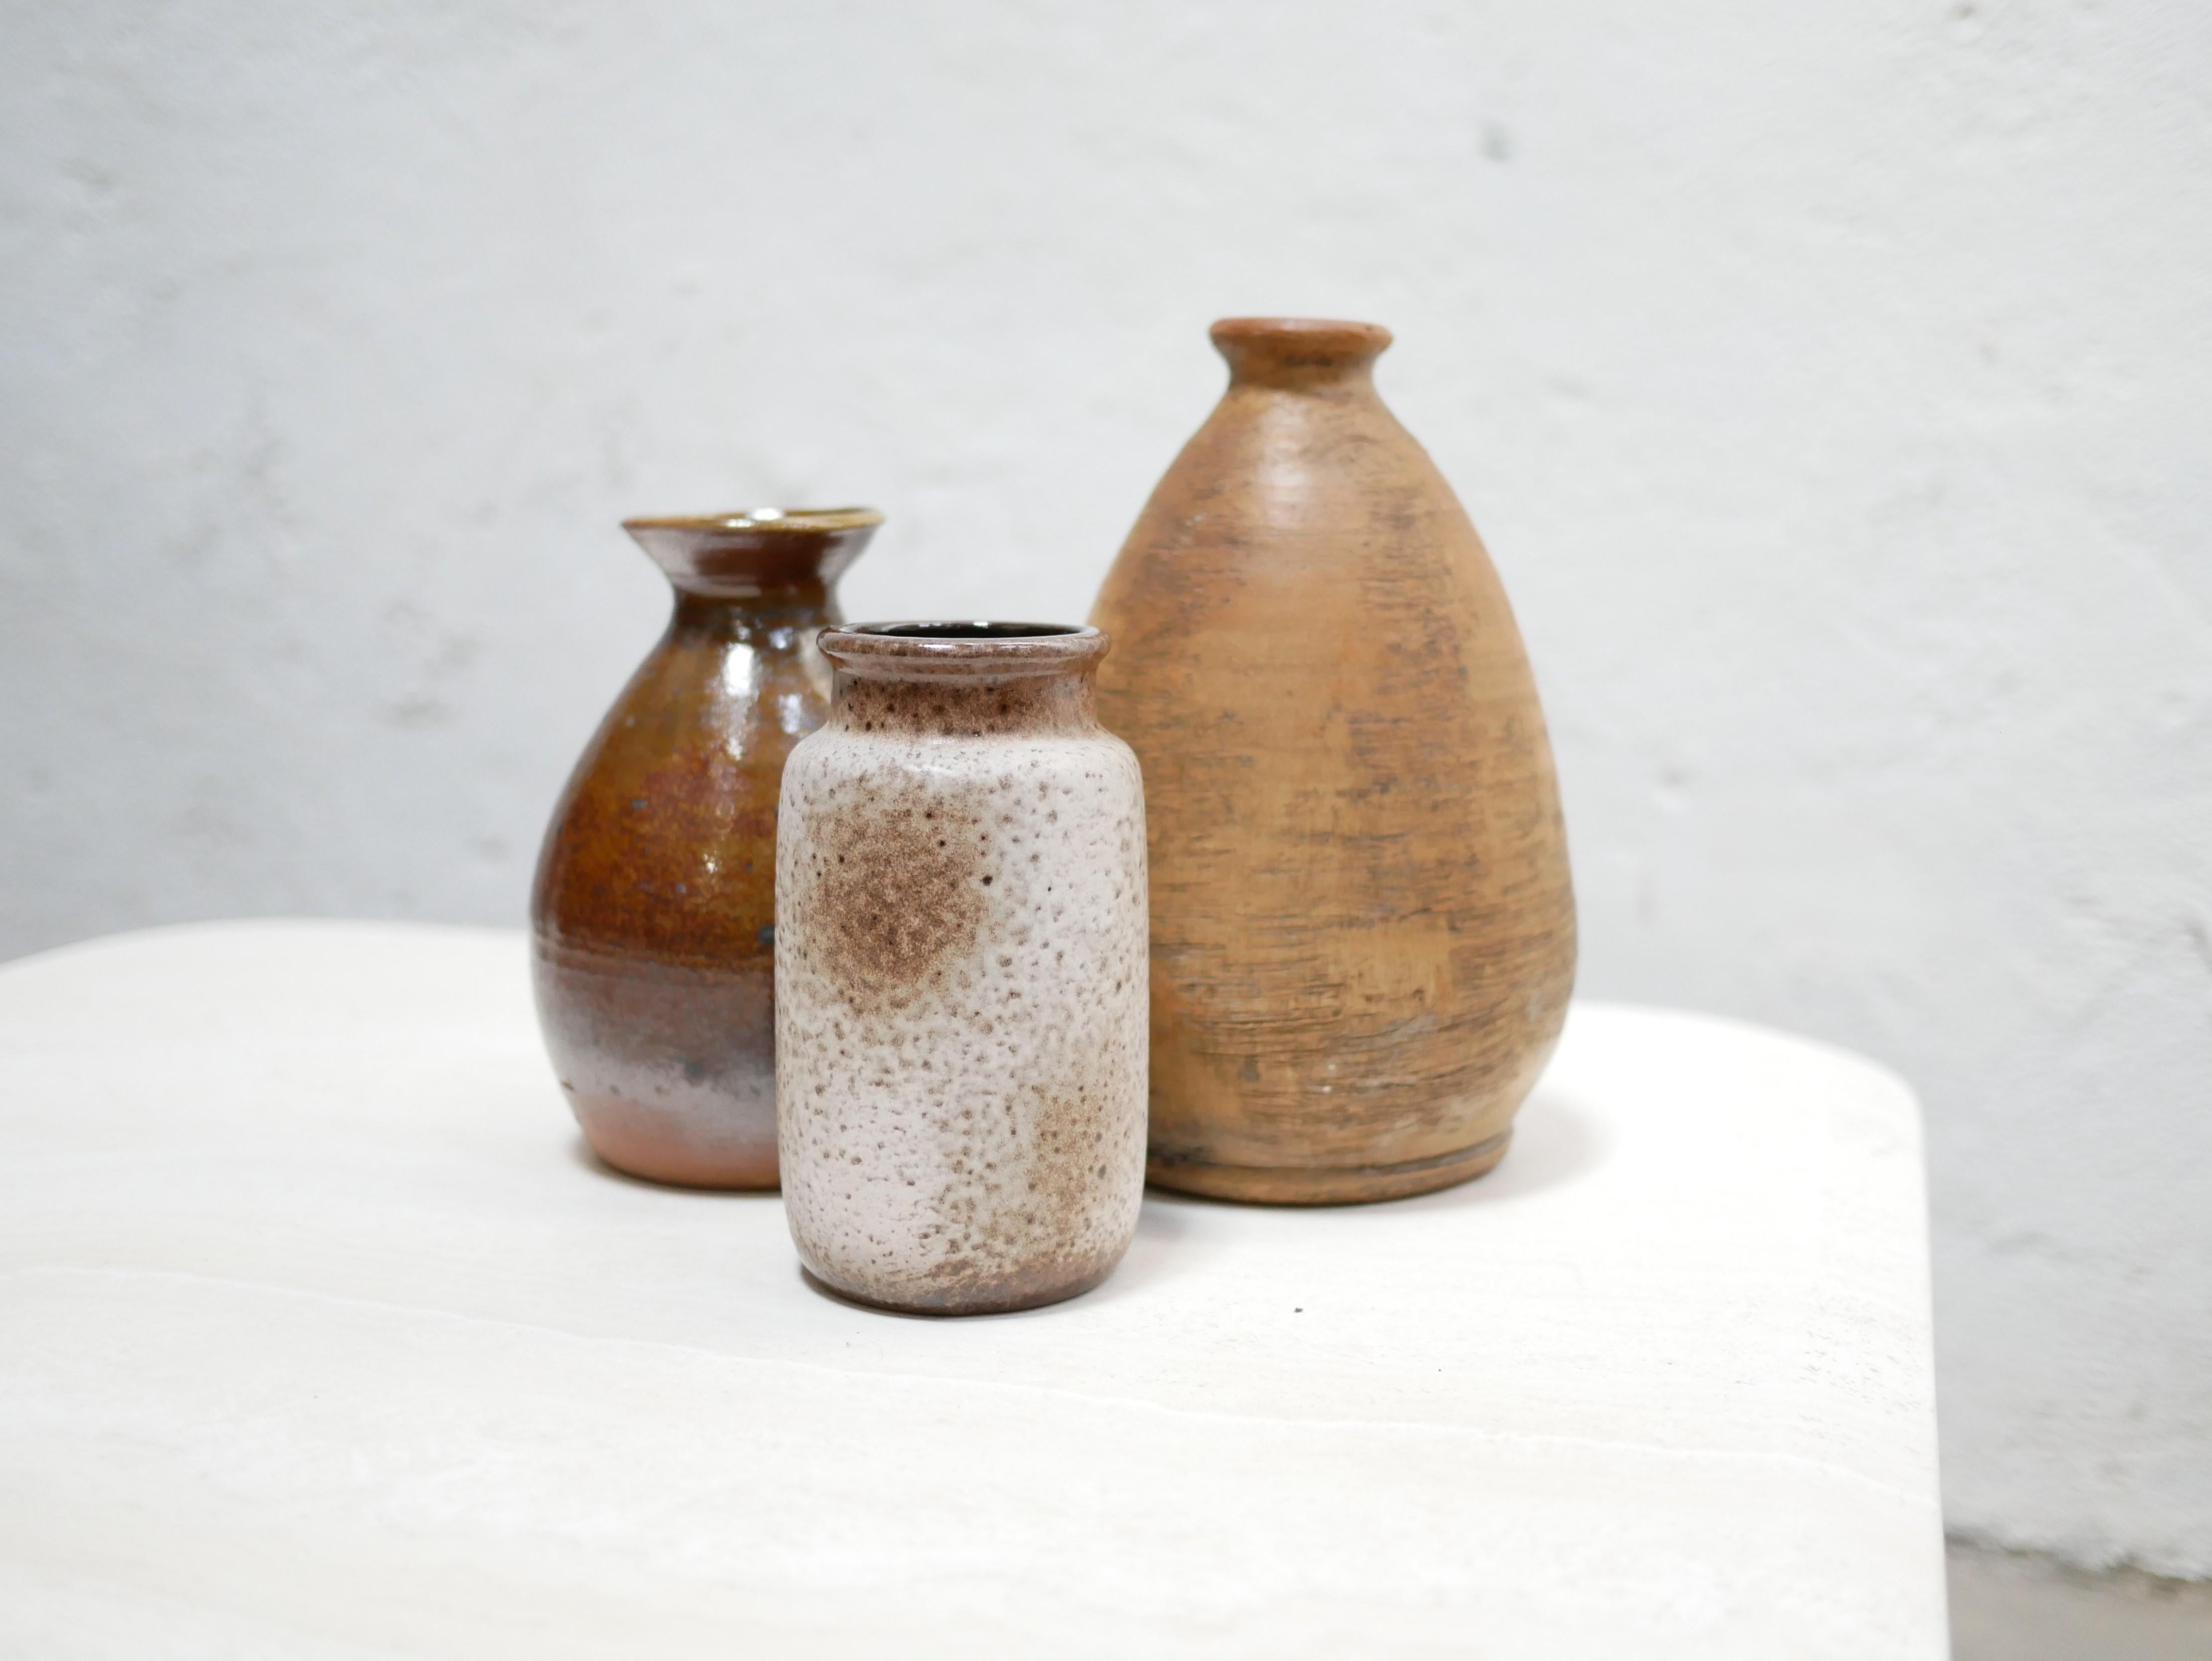 Vase aus Steingut, entworfen in Frankreich in den 1960er Jahren.

Mit ihrer modernen Form und ihrer rohen mineralischen Farbe passt diese Keramik perfekt zu einer natürlichen, raffinierten und zarten Dekoration.
Wir stellen sie uns einfach auf einem